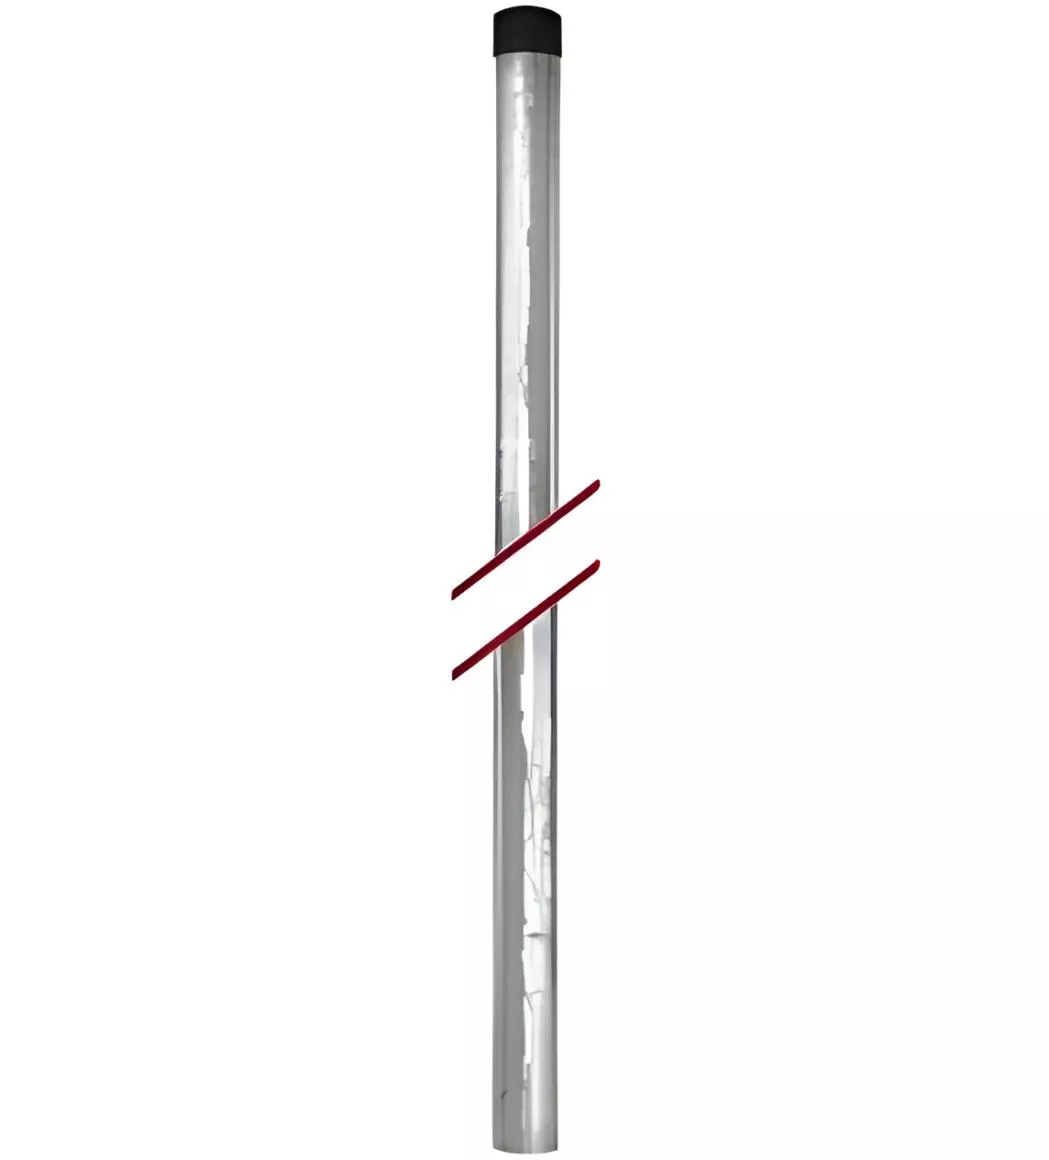 Antennenmast Stahl verzinkt 2m Ø60mm-Artikelnummer-068 001 32-von-Diverse